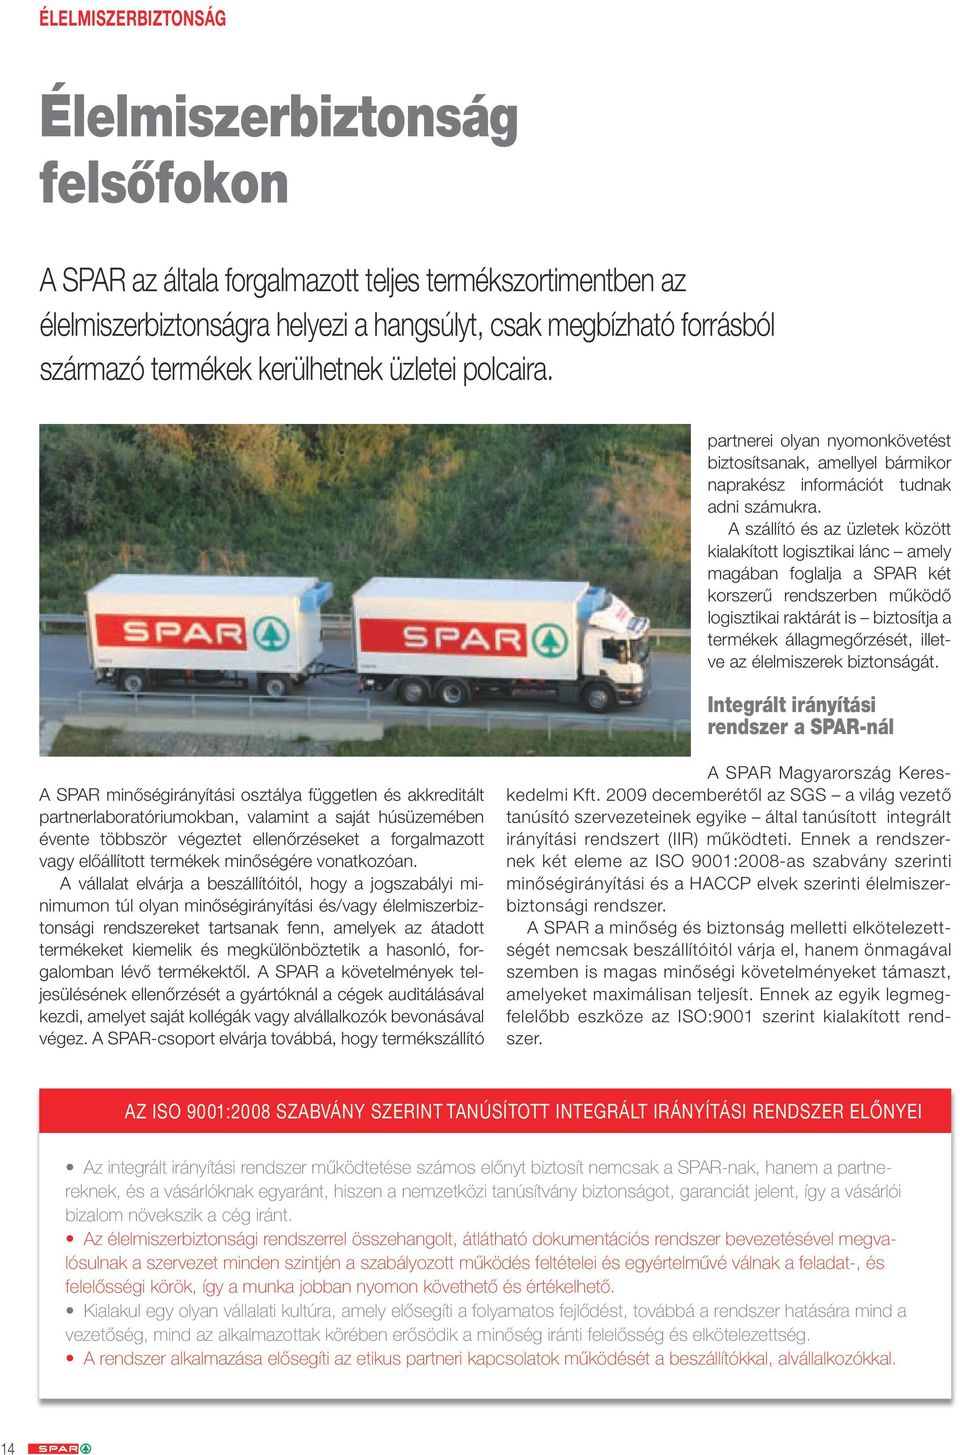 A szállító és az üzletek között kialakított logisztikai lánc amely magában foglalja a SPAR két korszerű rendszerben működő logisztikai raktárát is biztosítja a termékek állagmegőrzését, illetve az